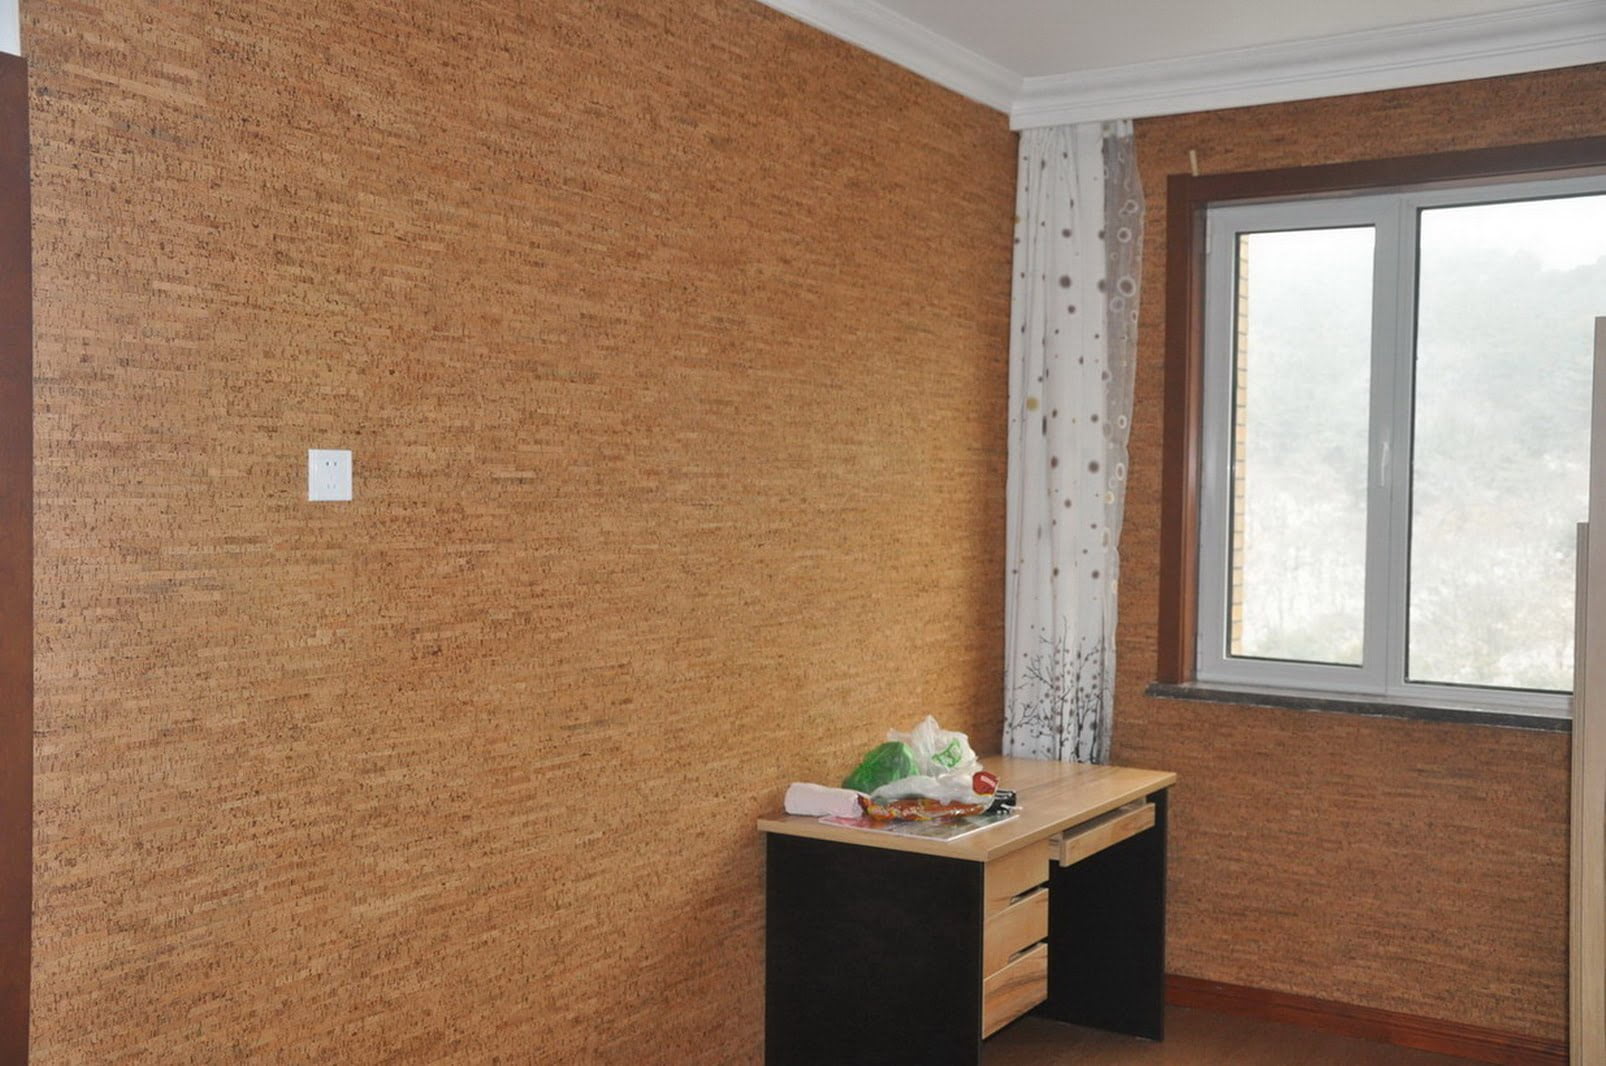 Qué panel de corcho usas para el revestimiento de tus paredes?